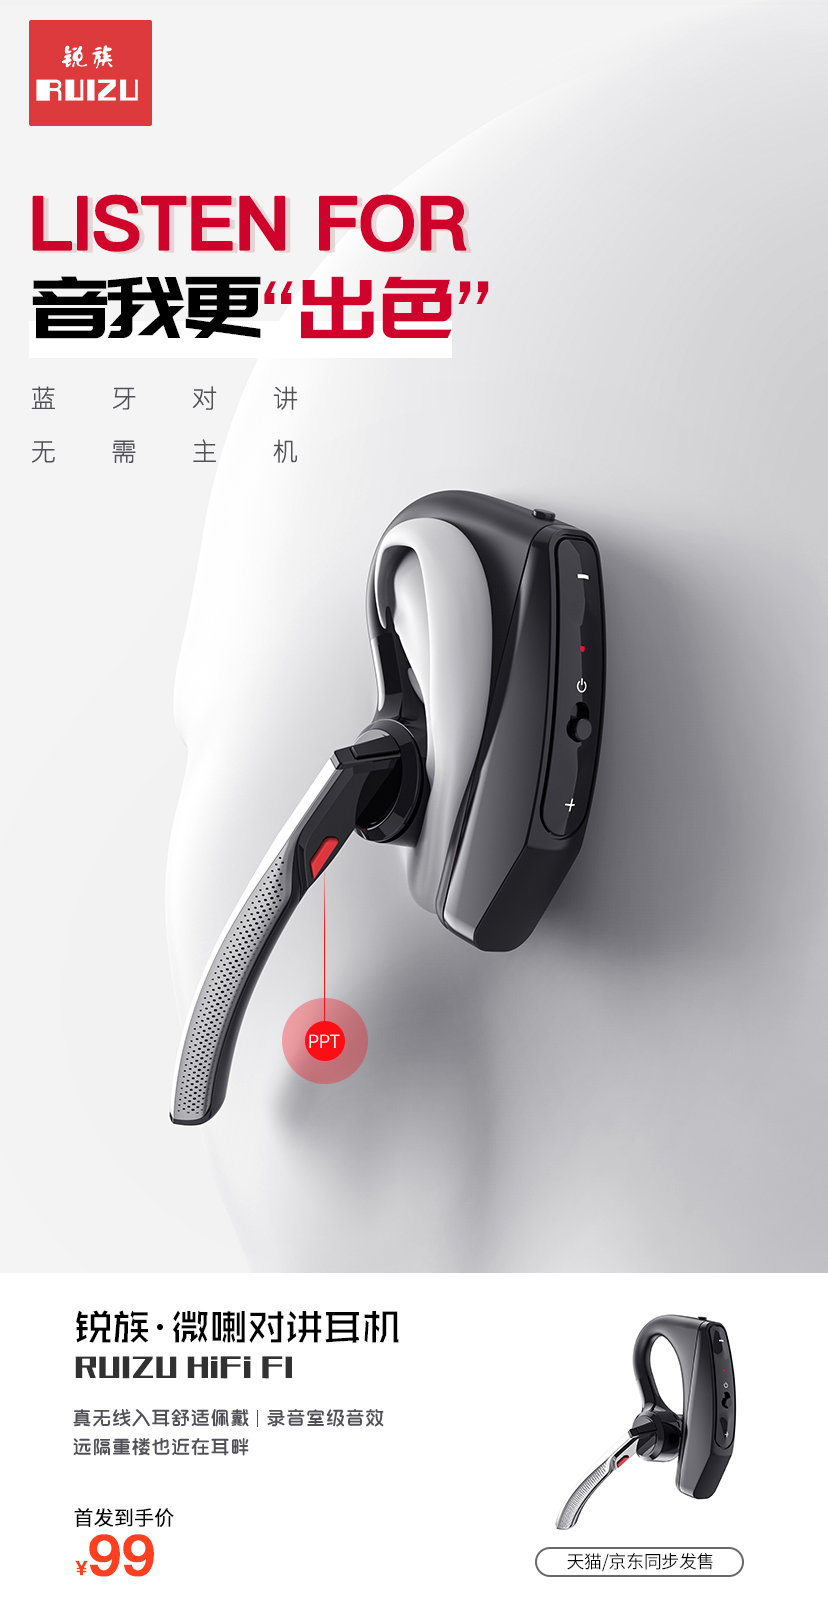 锐族新品微喇对讲耳机蓝牙对讲耳机新品上架蓝牙耳机实时对讲耳机